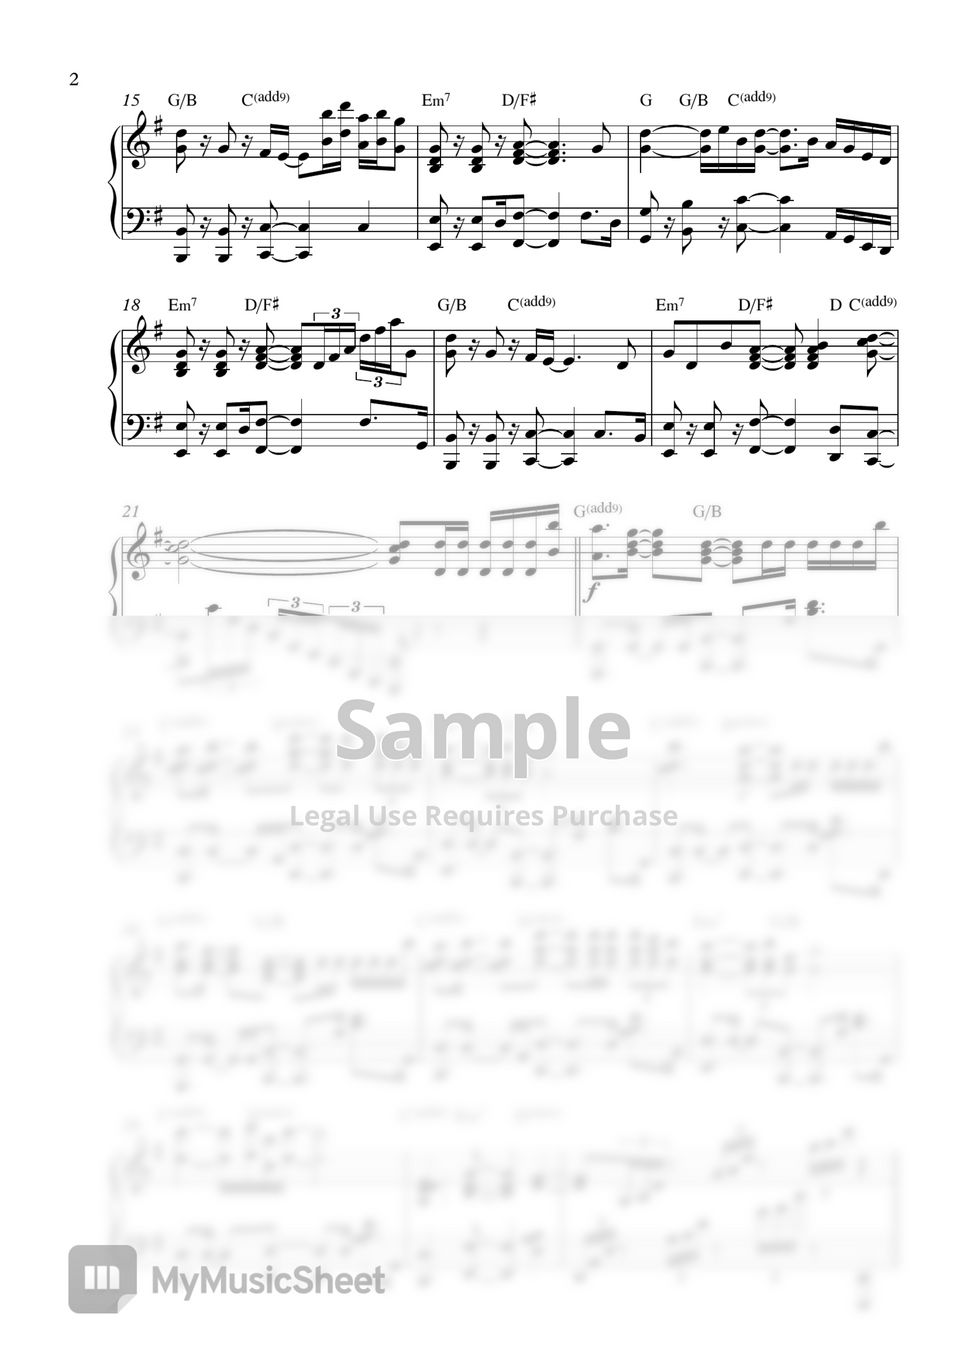 IU - strawberry moon - 2 PDF (Original Key Gb & Easier Key G) by Pianella Piano